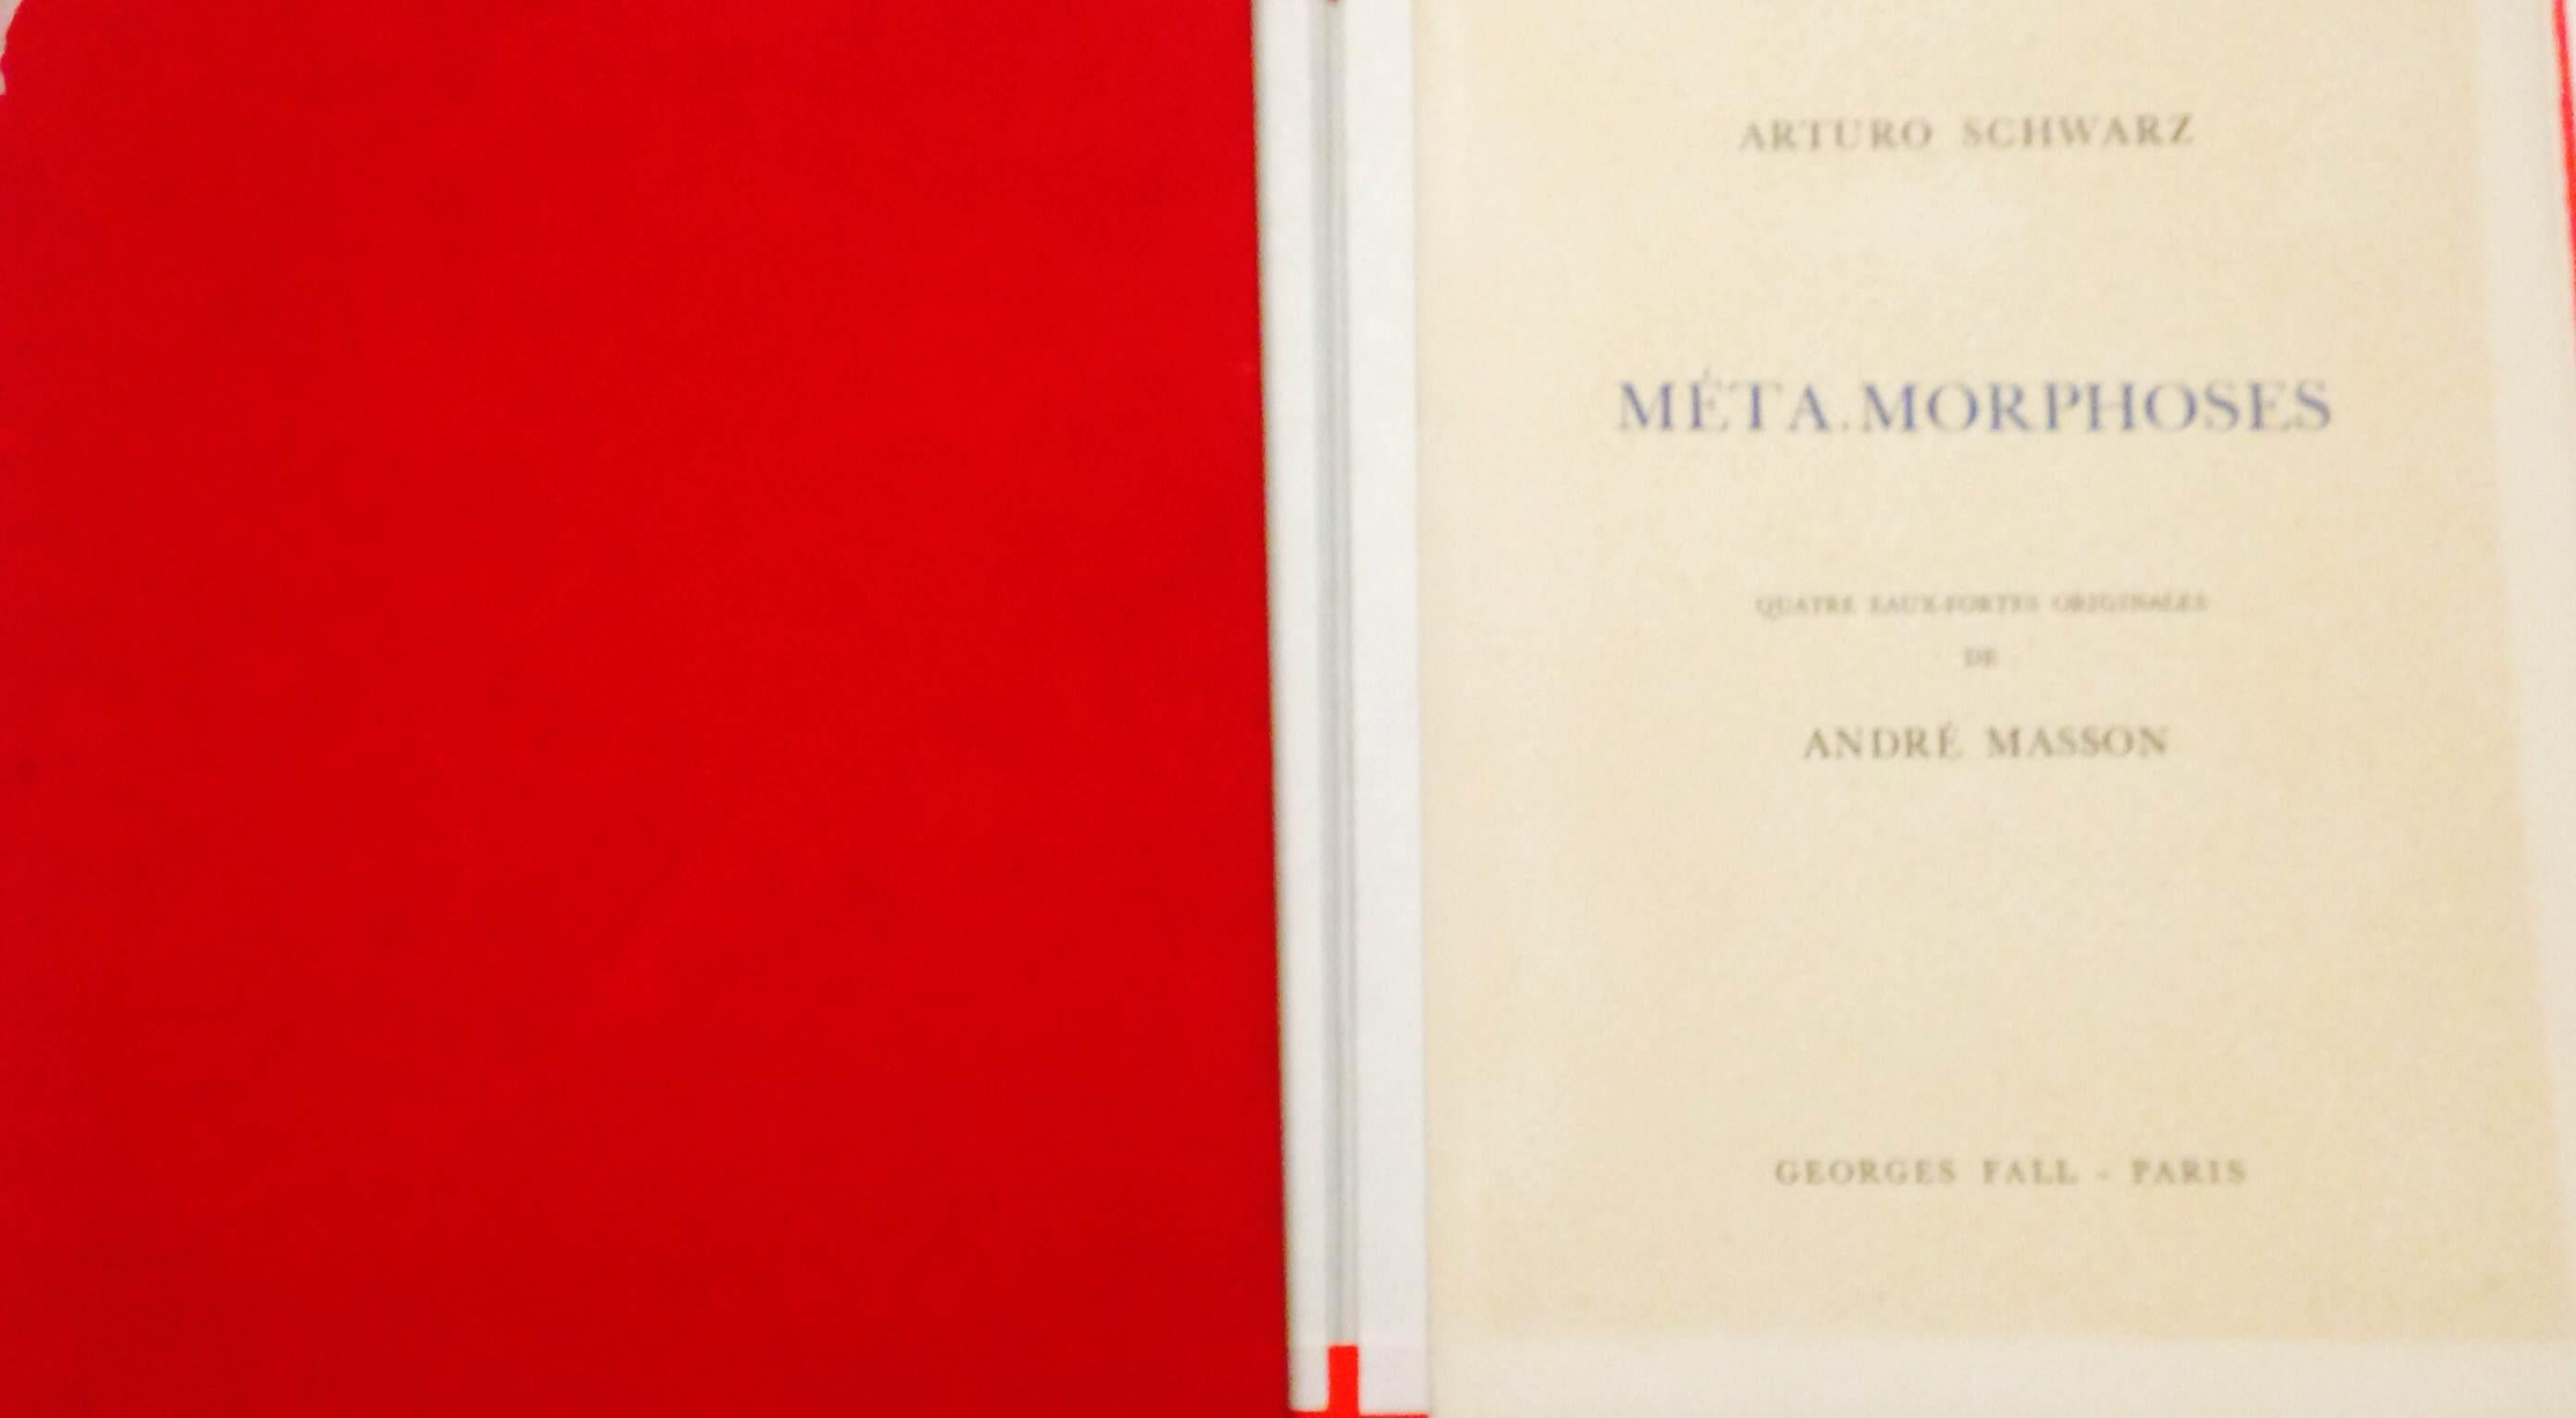 MetaMorphoses - Livre illustré d'Andr Masson, éditeur A. Schwarz - 1975